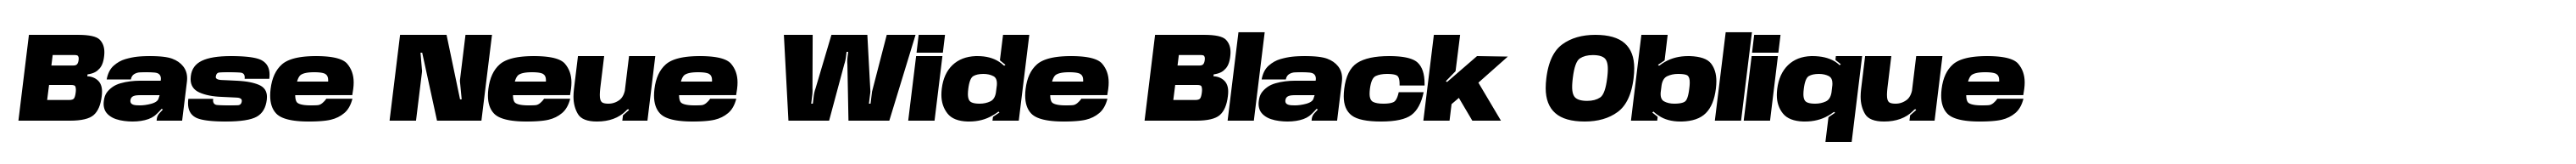 Base Neue Wide Black Oblique